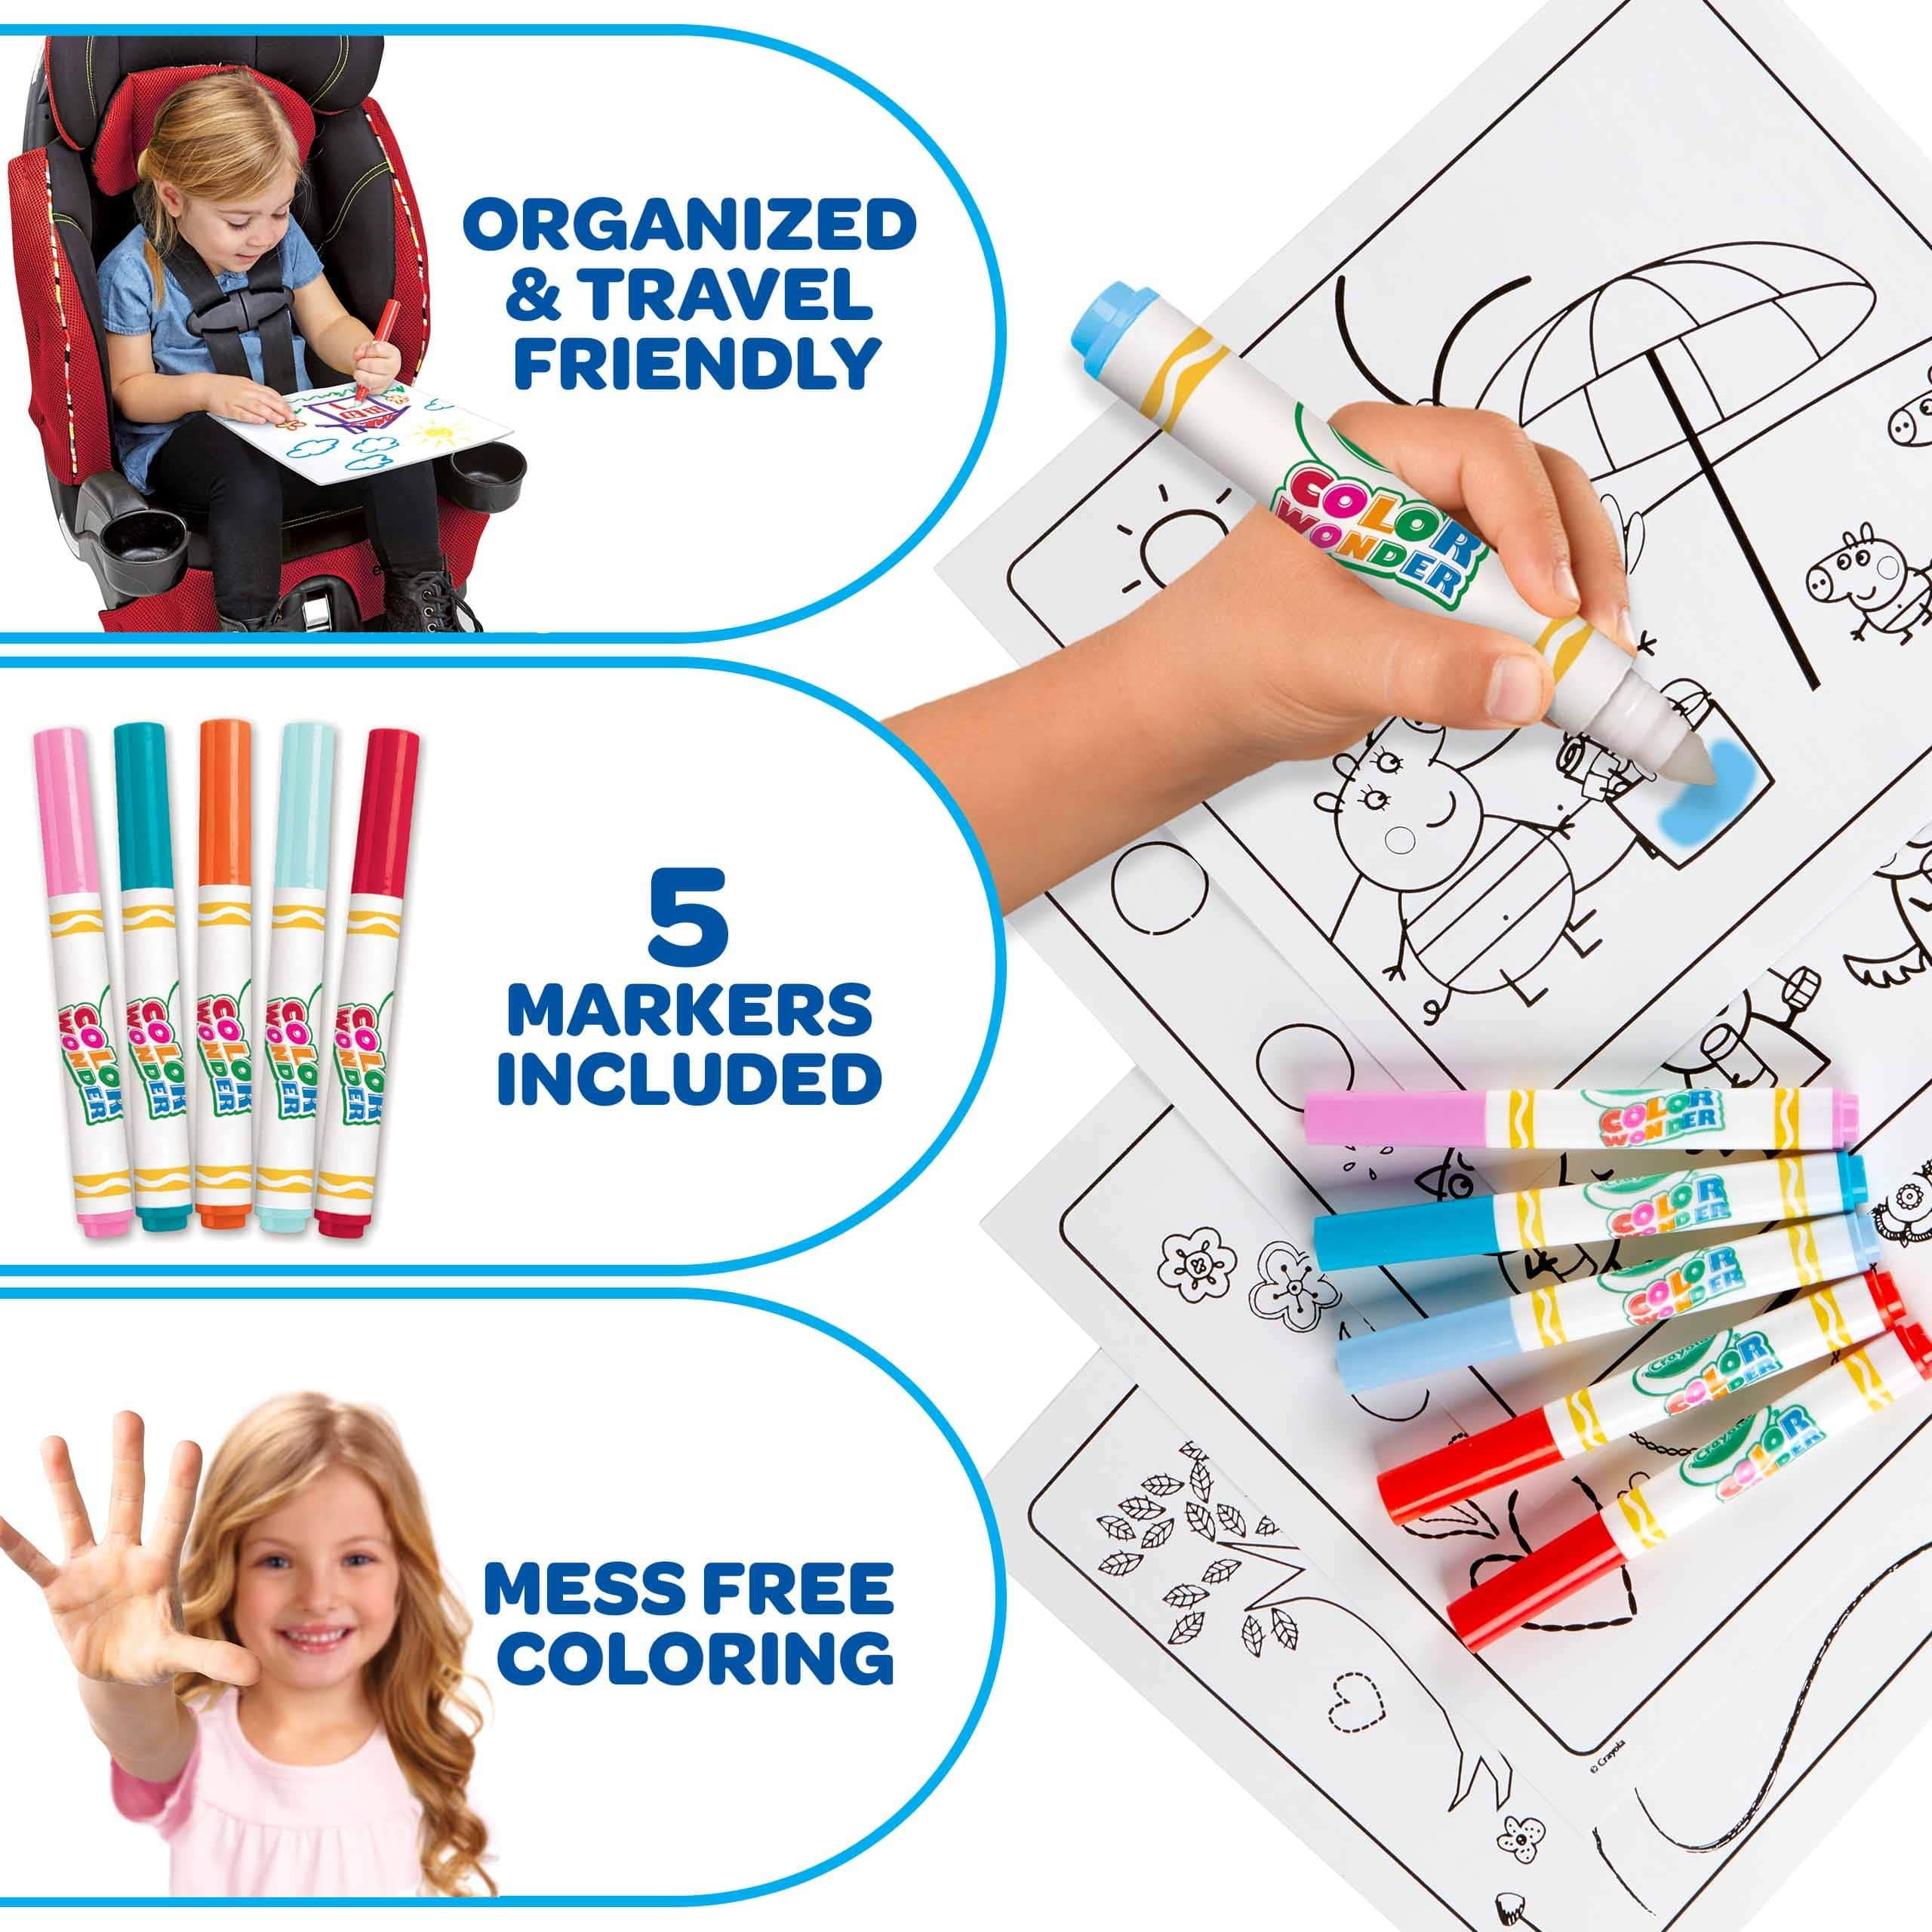 Crayola Peppa Pig Wonder Mess Free Coloring Set Book, Gift for Kids 